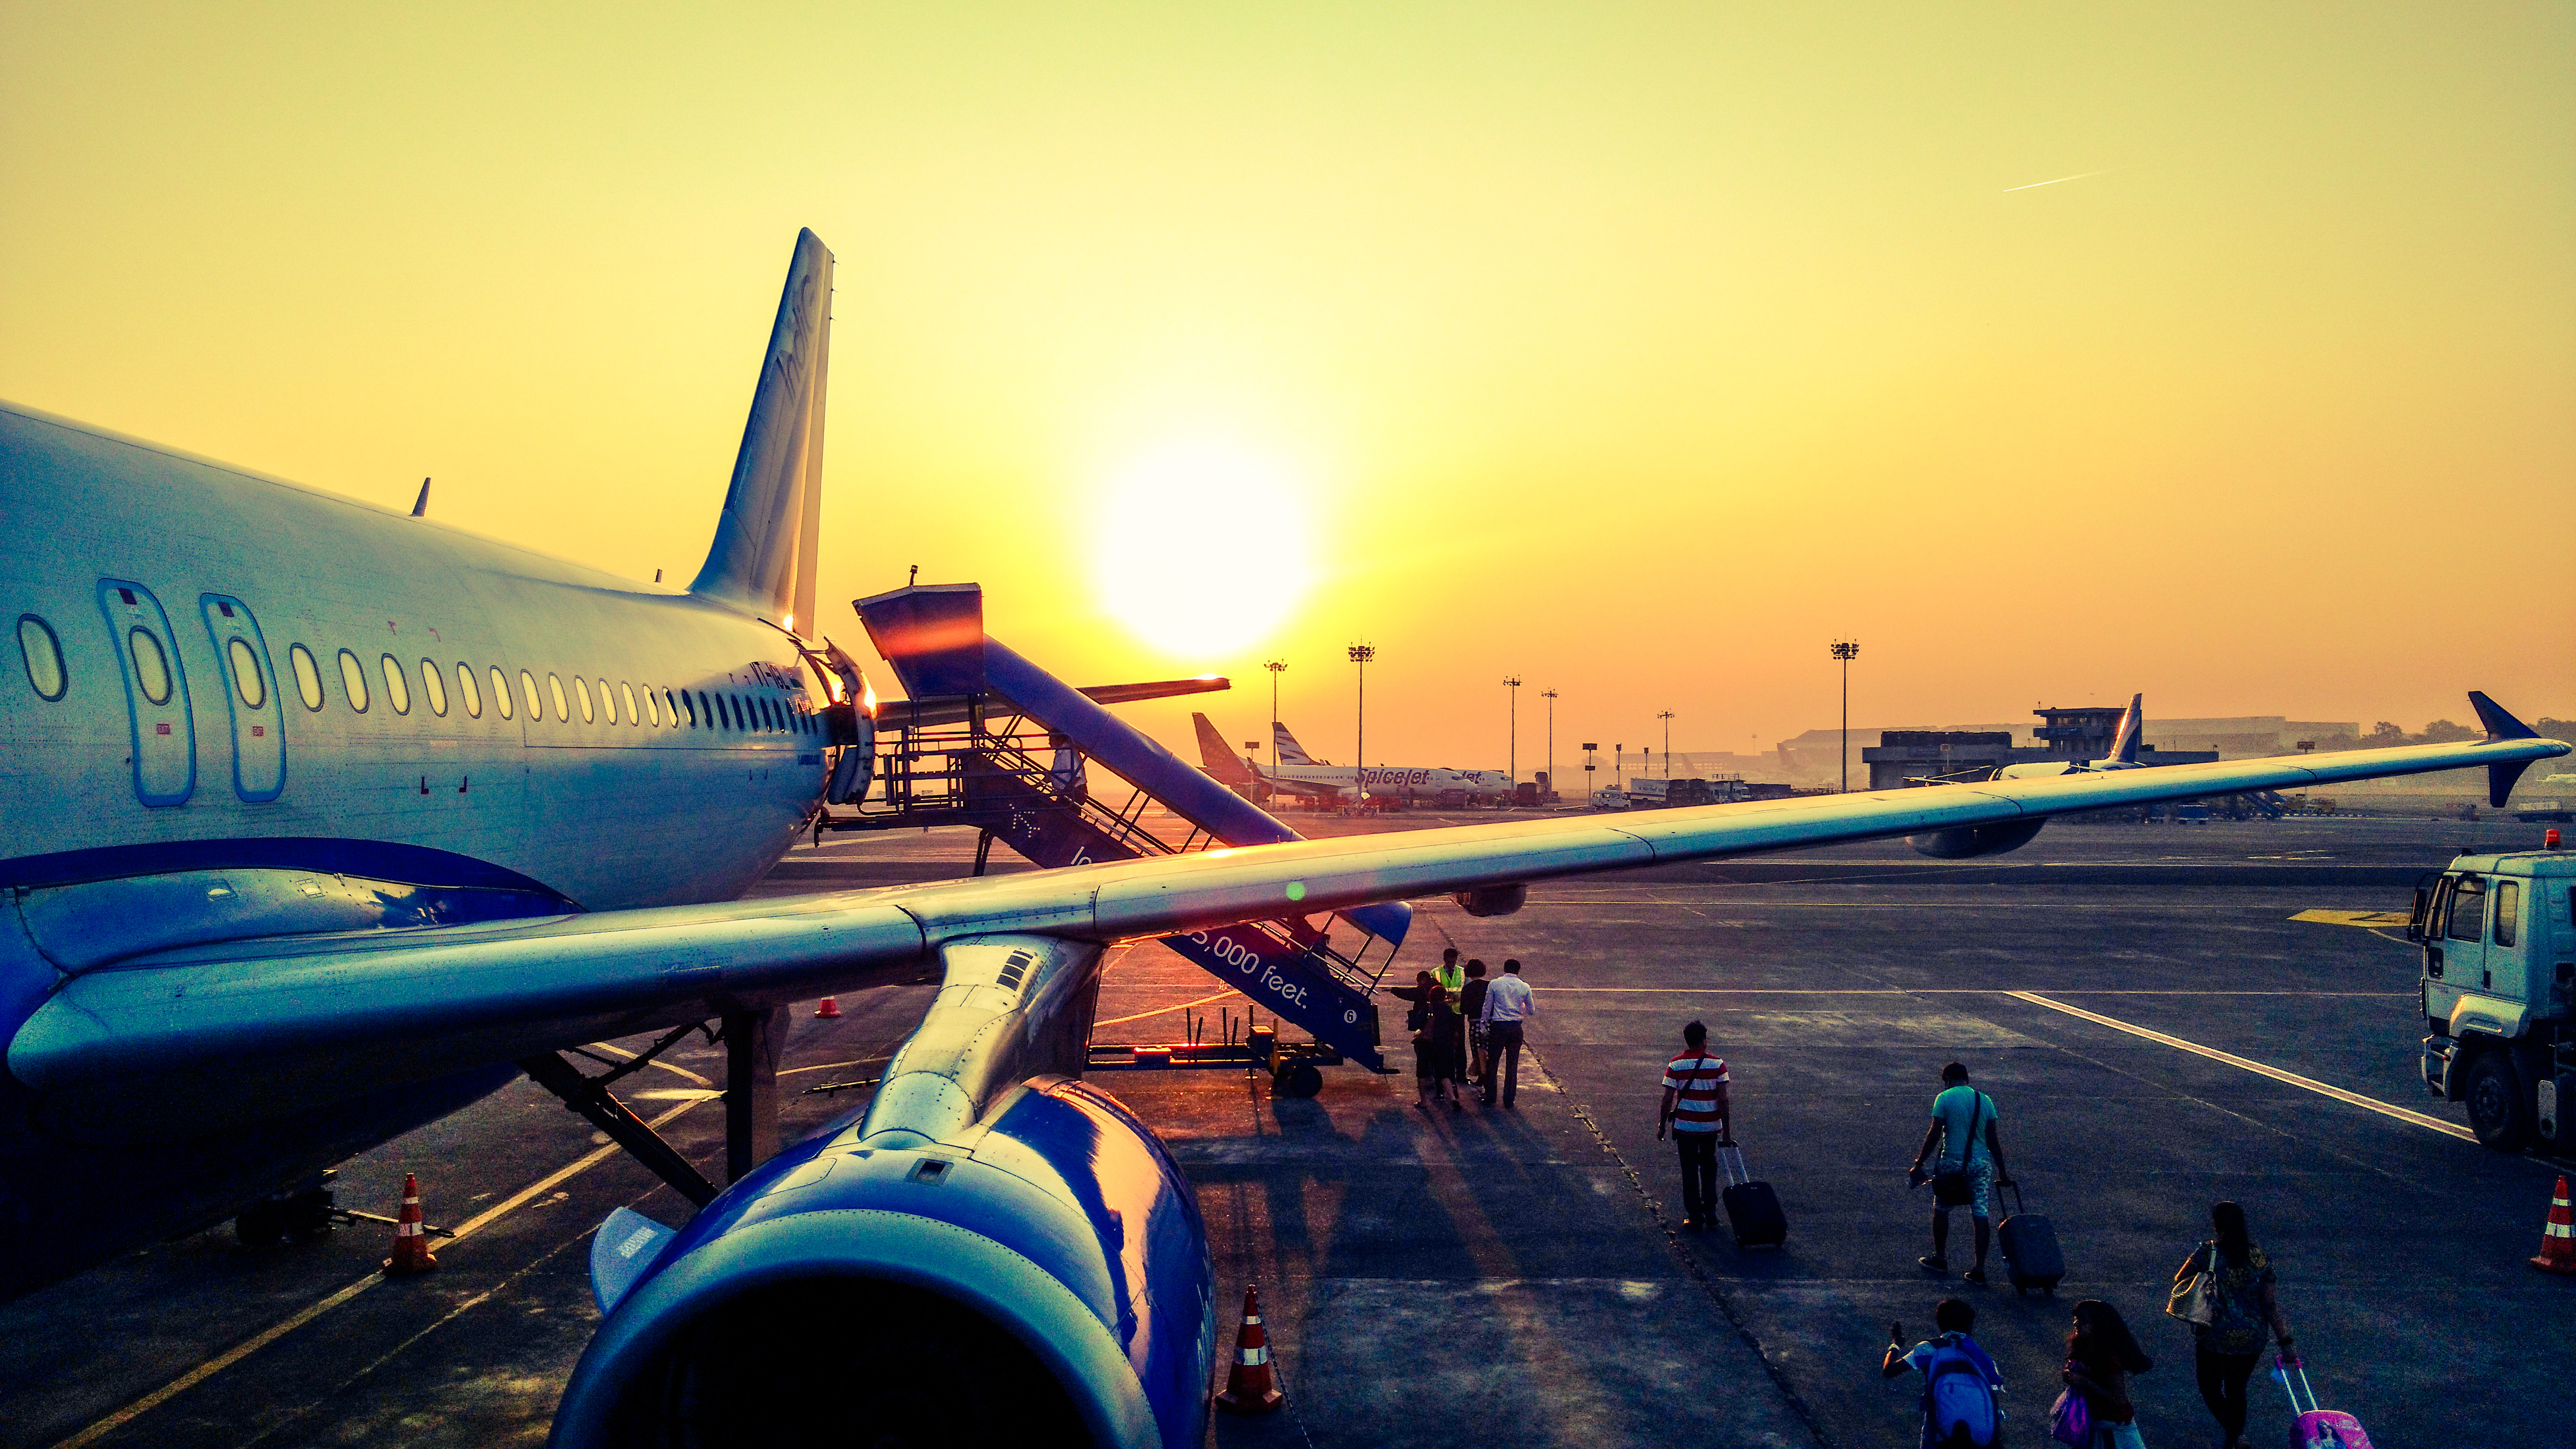 Viaggiare sicuri come scegliere la compagnia aerea